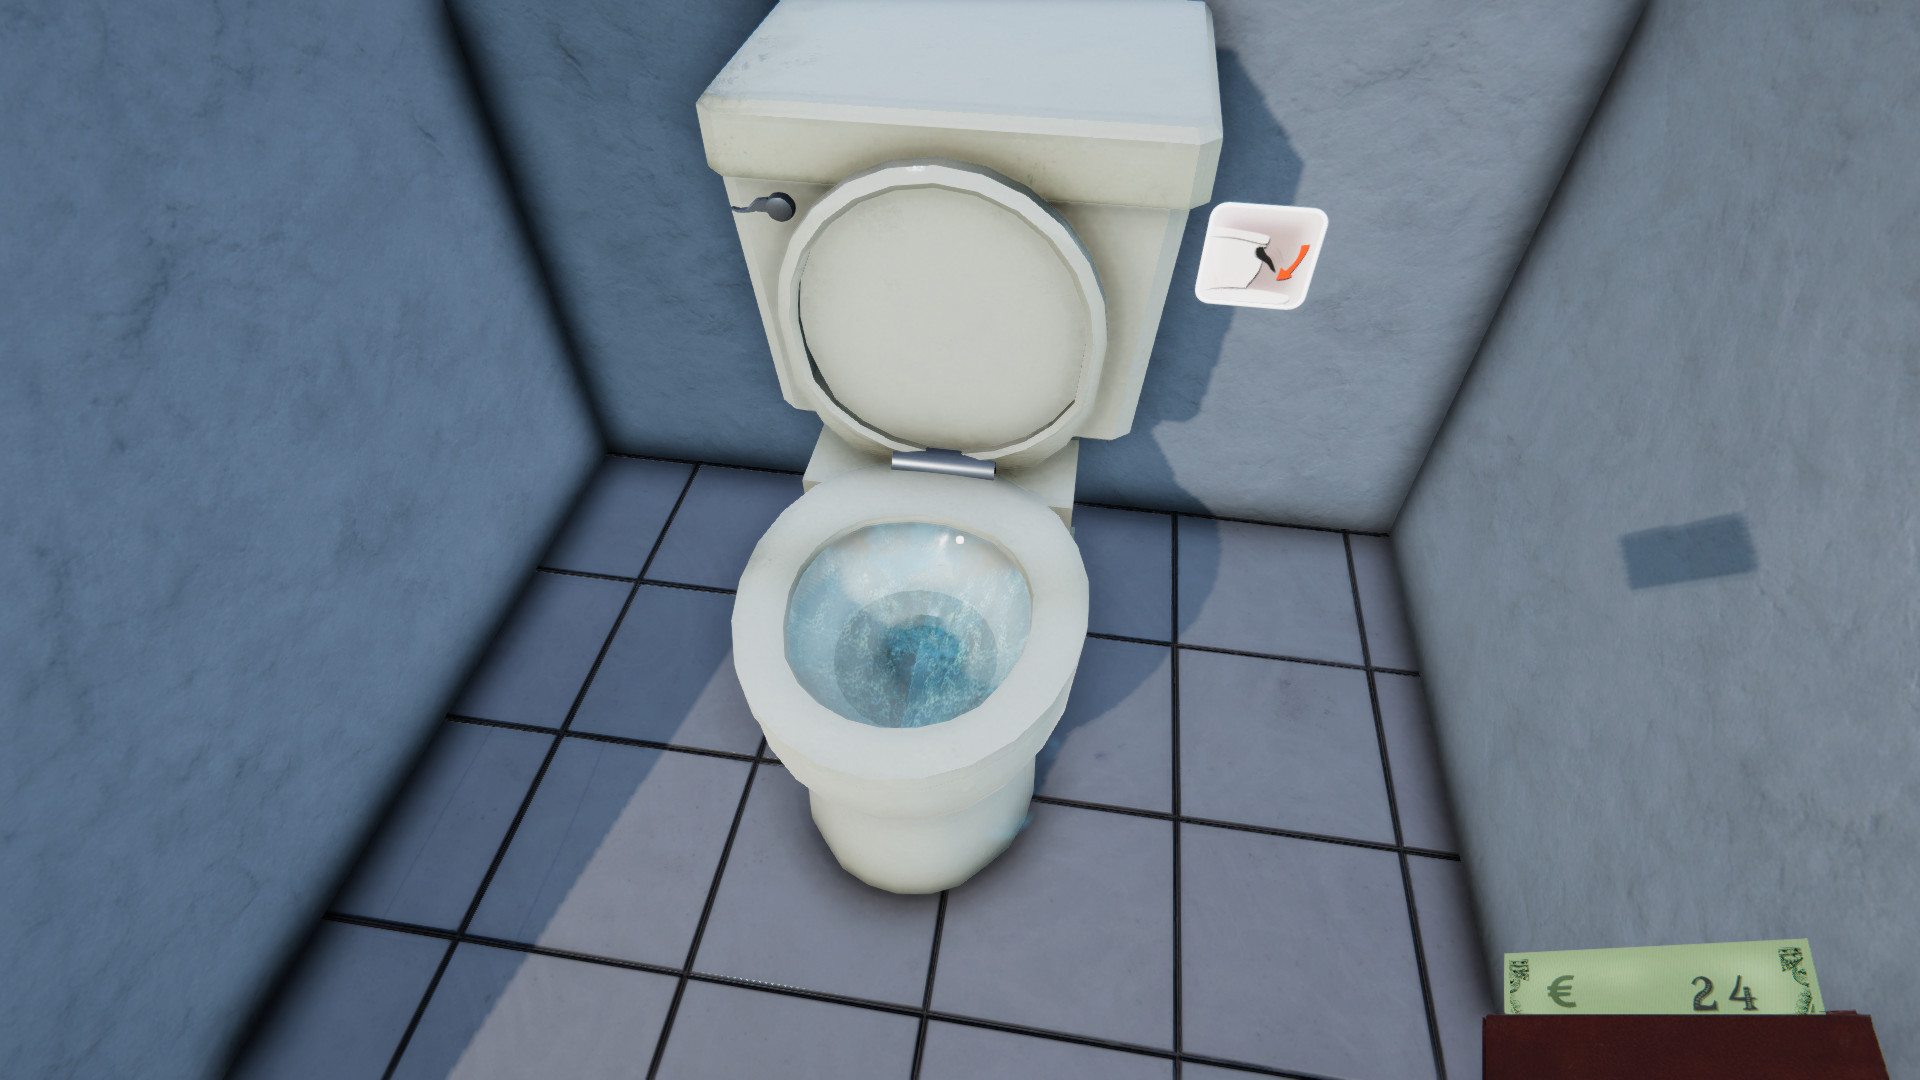 Игра туалет открытый мир. Игра Toilet Management. Туалет менеджер симулятор. Игровой унитаз. Унитаз в туалете.